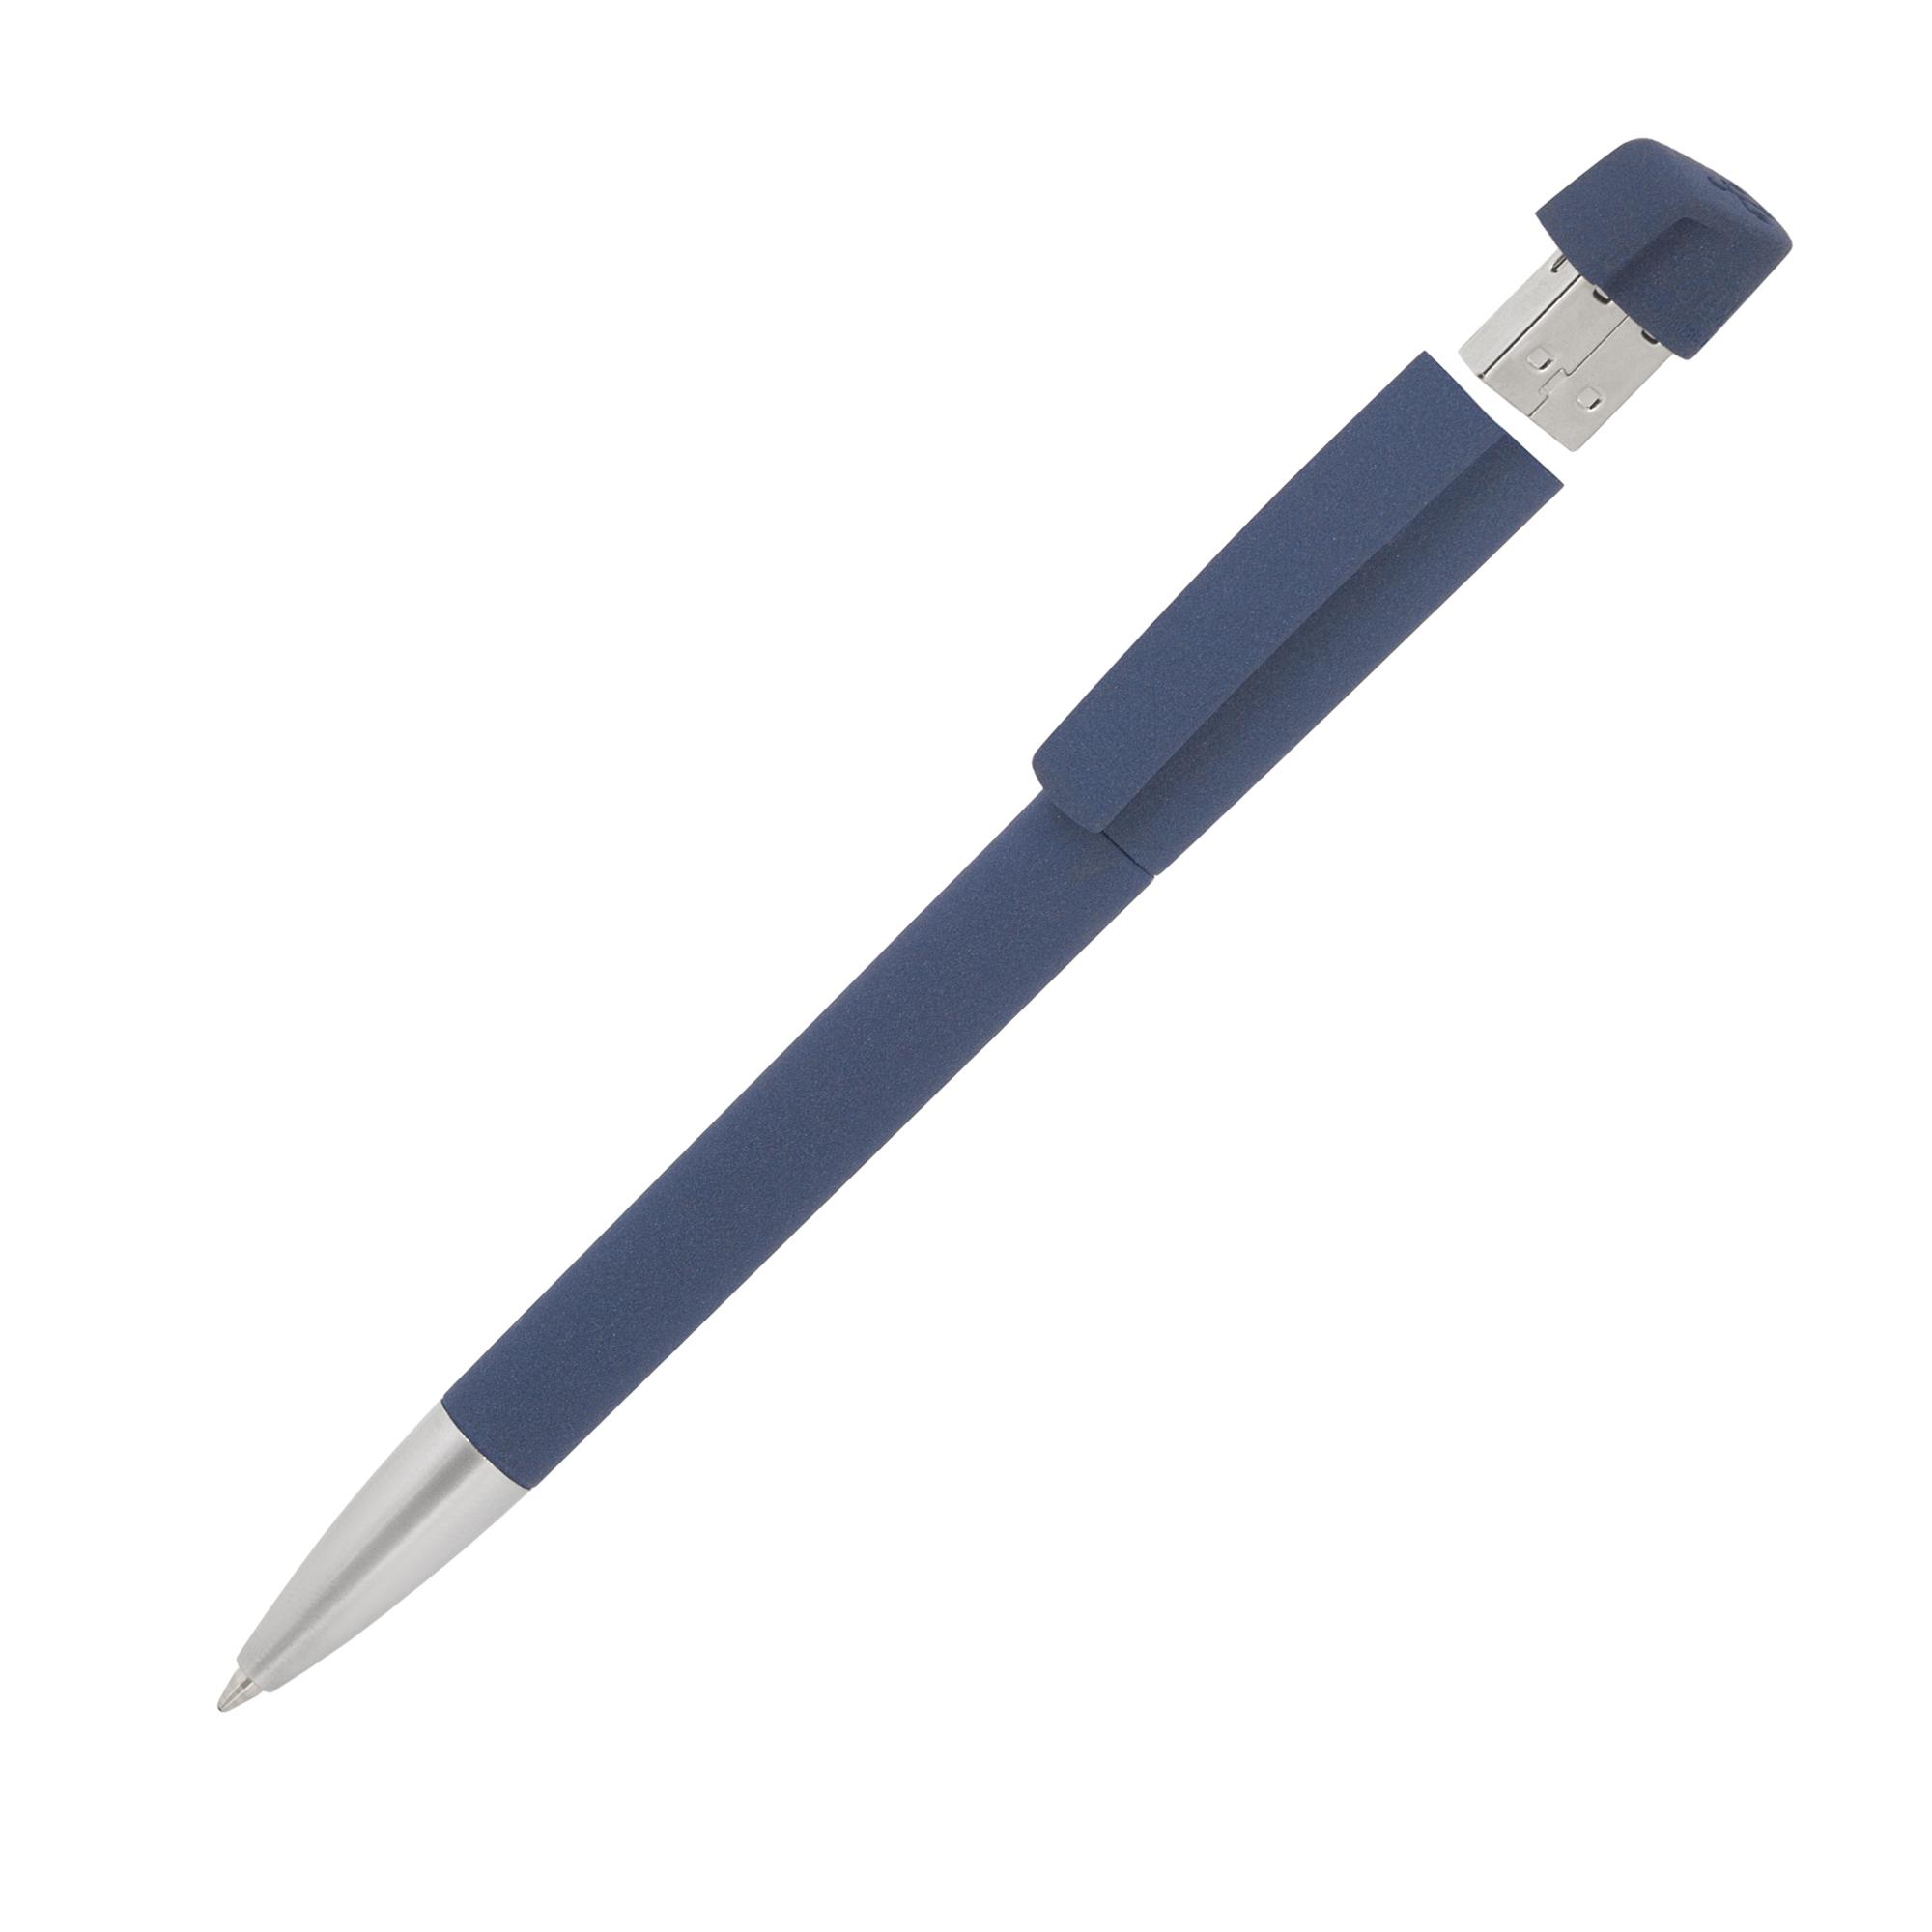 Ручка с флеш-картой USB 16GB «TURNUSsoftgrip M», цвет темно-синий, фото 2